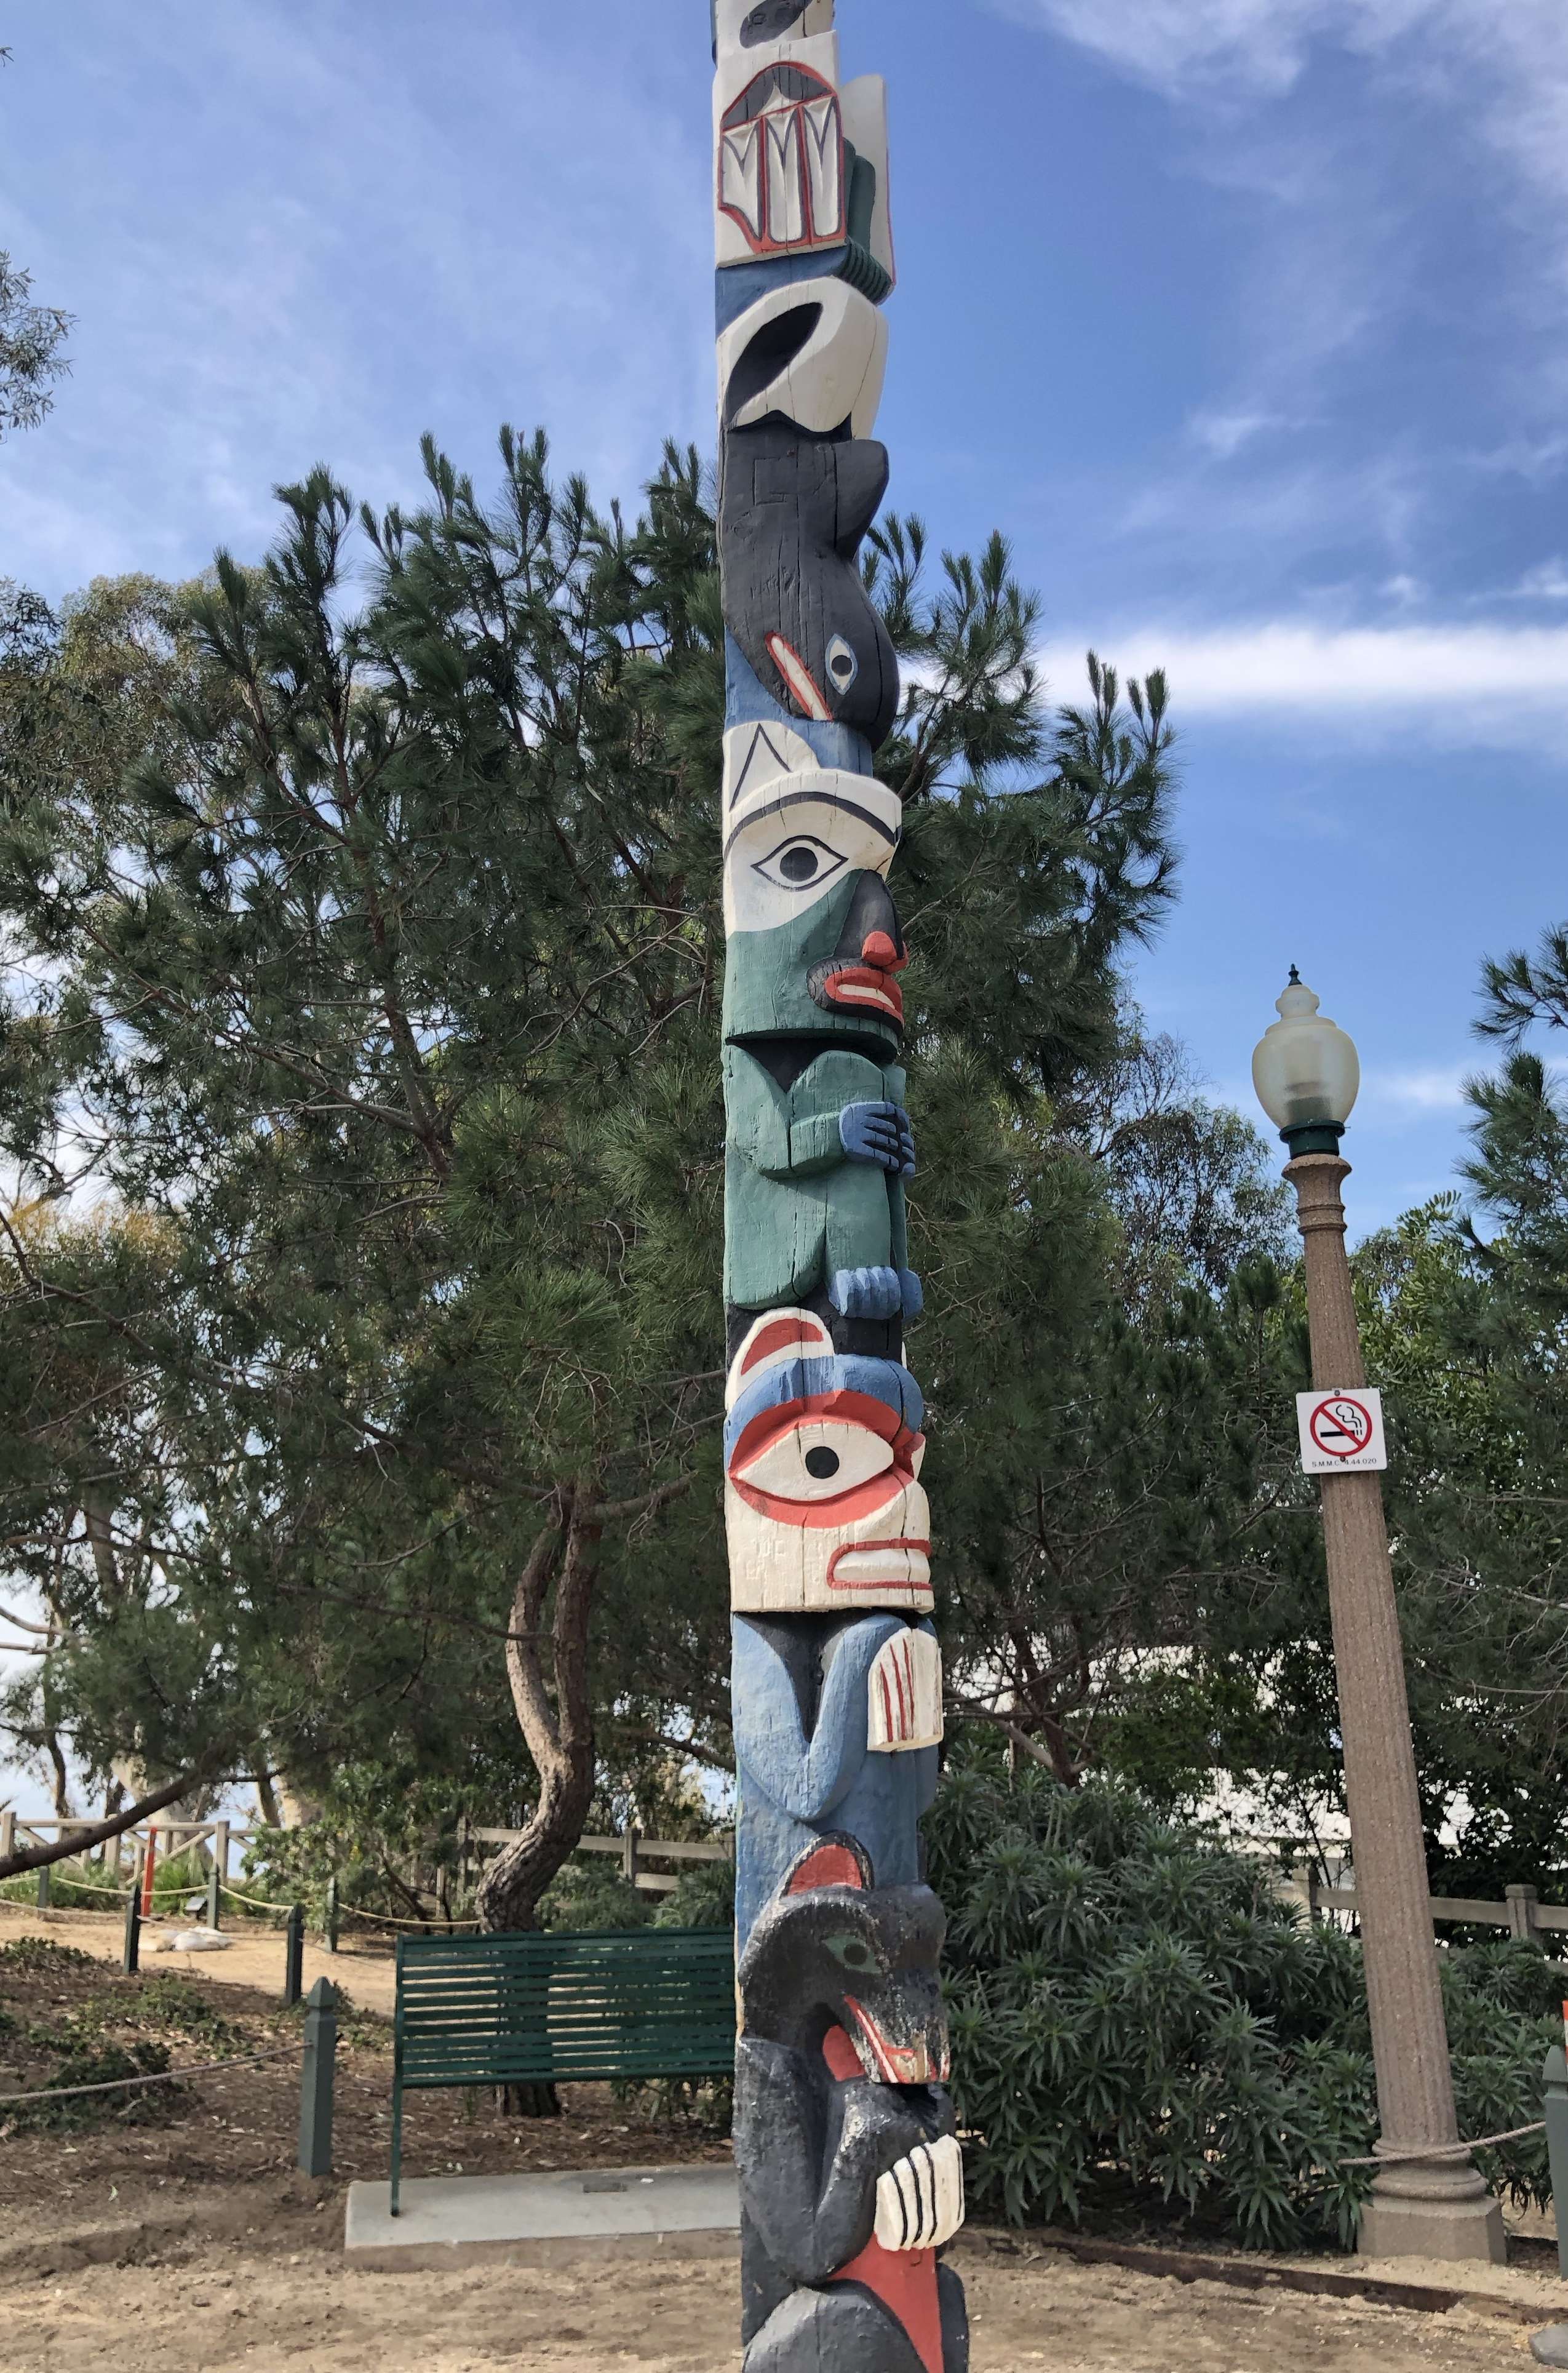 Totem Pole in Santa Monica